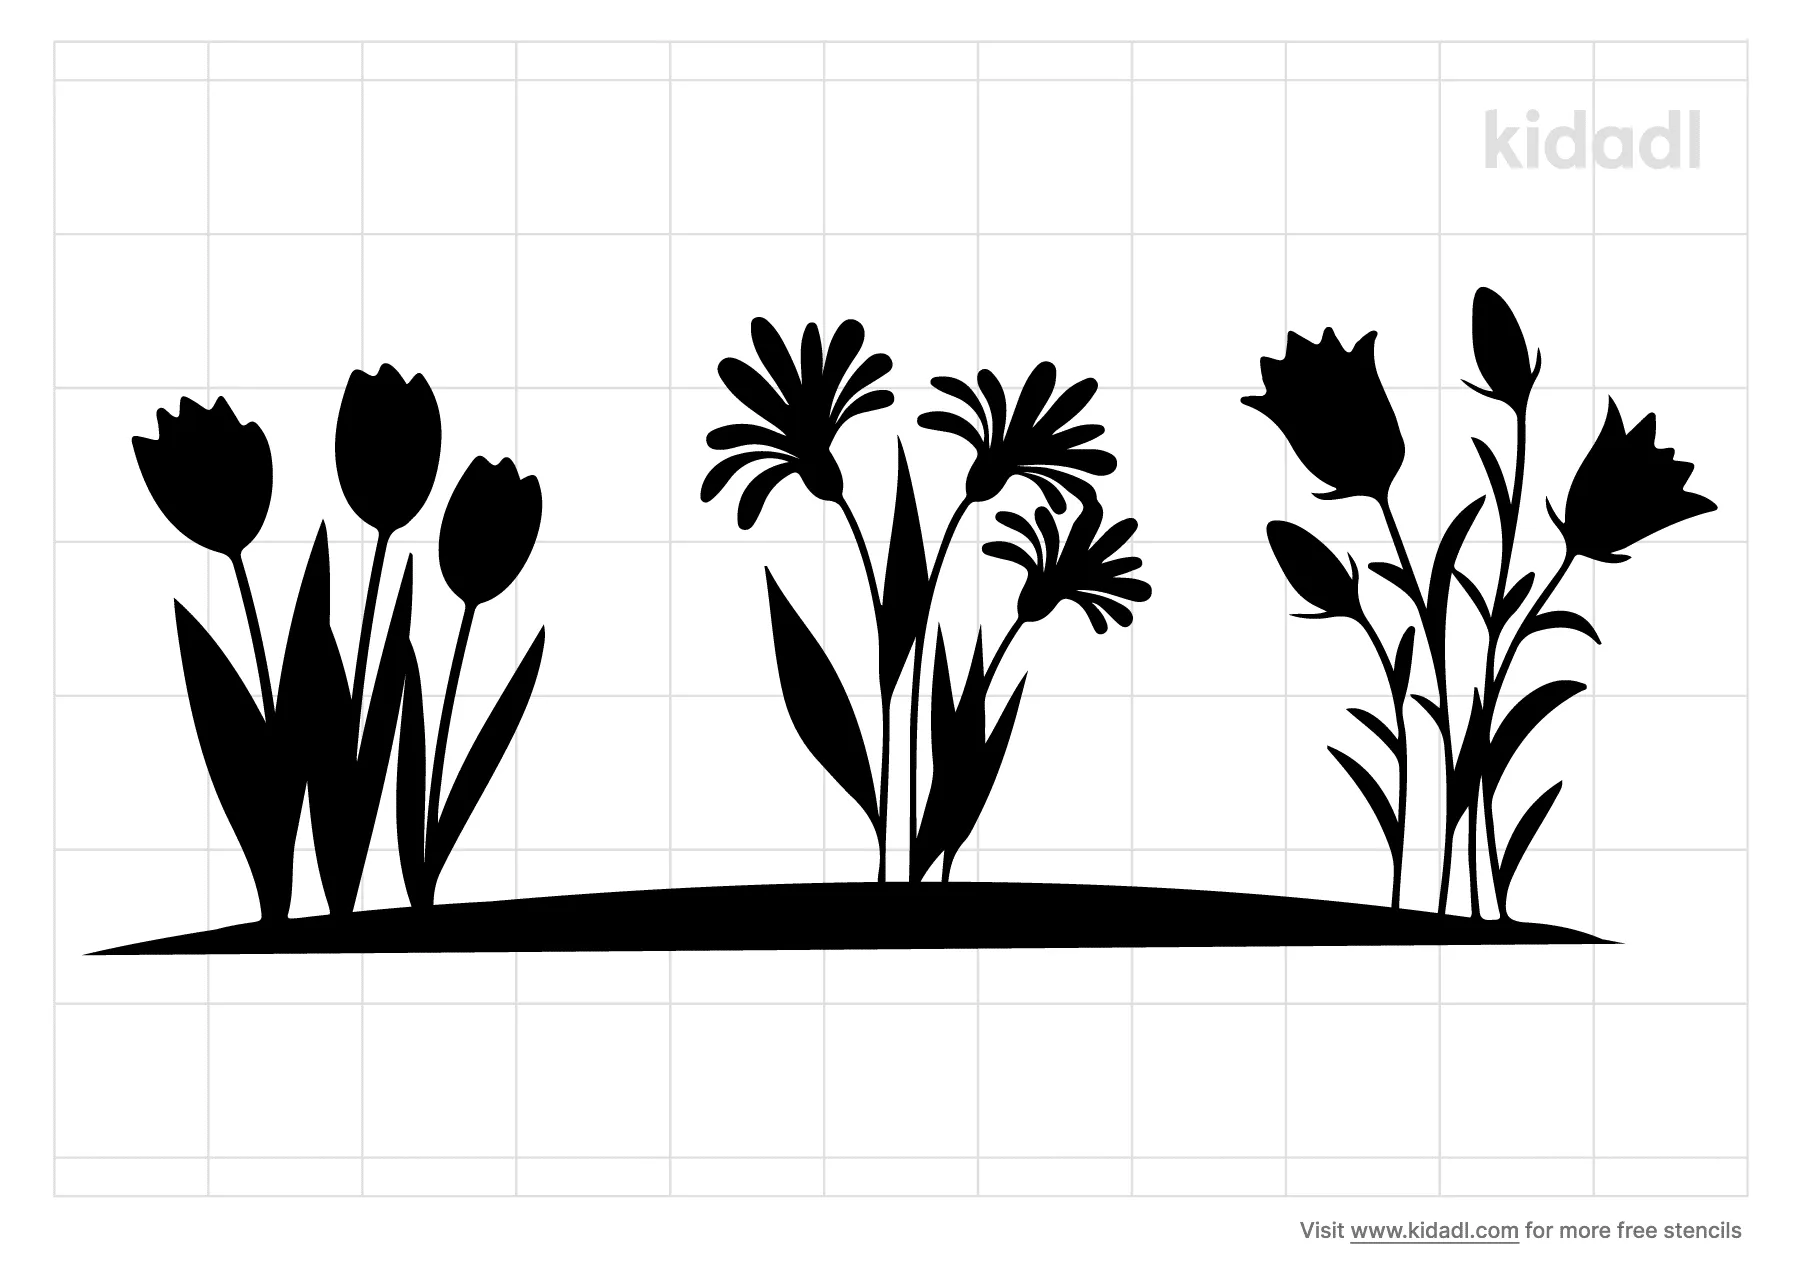 Flower Garden Stencils Free Printable Plants Stencils Kidadl And Plants Stencils Free Printable Stencils Kidadl